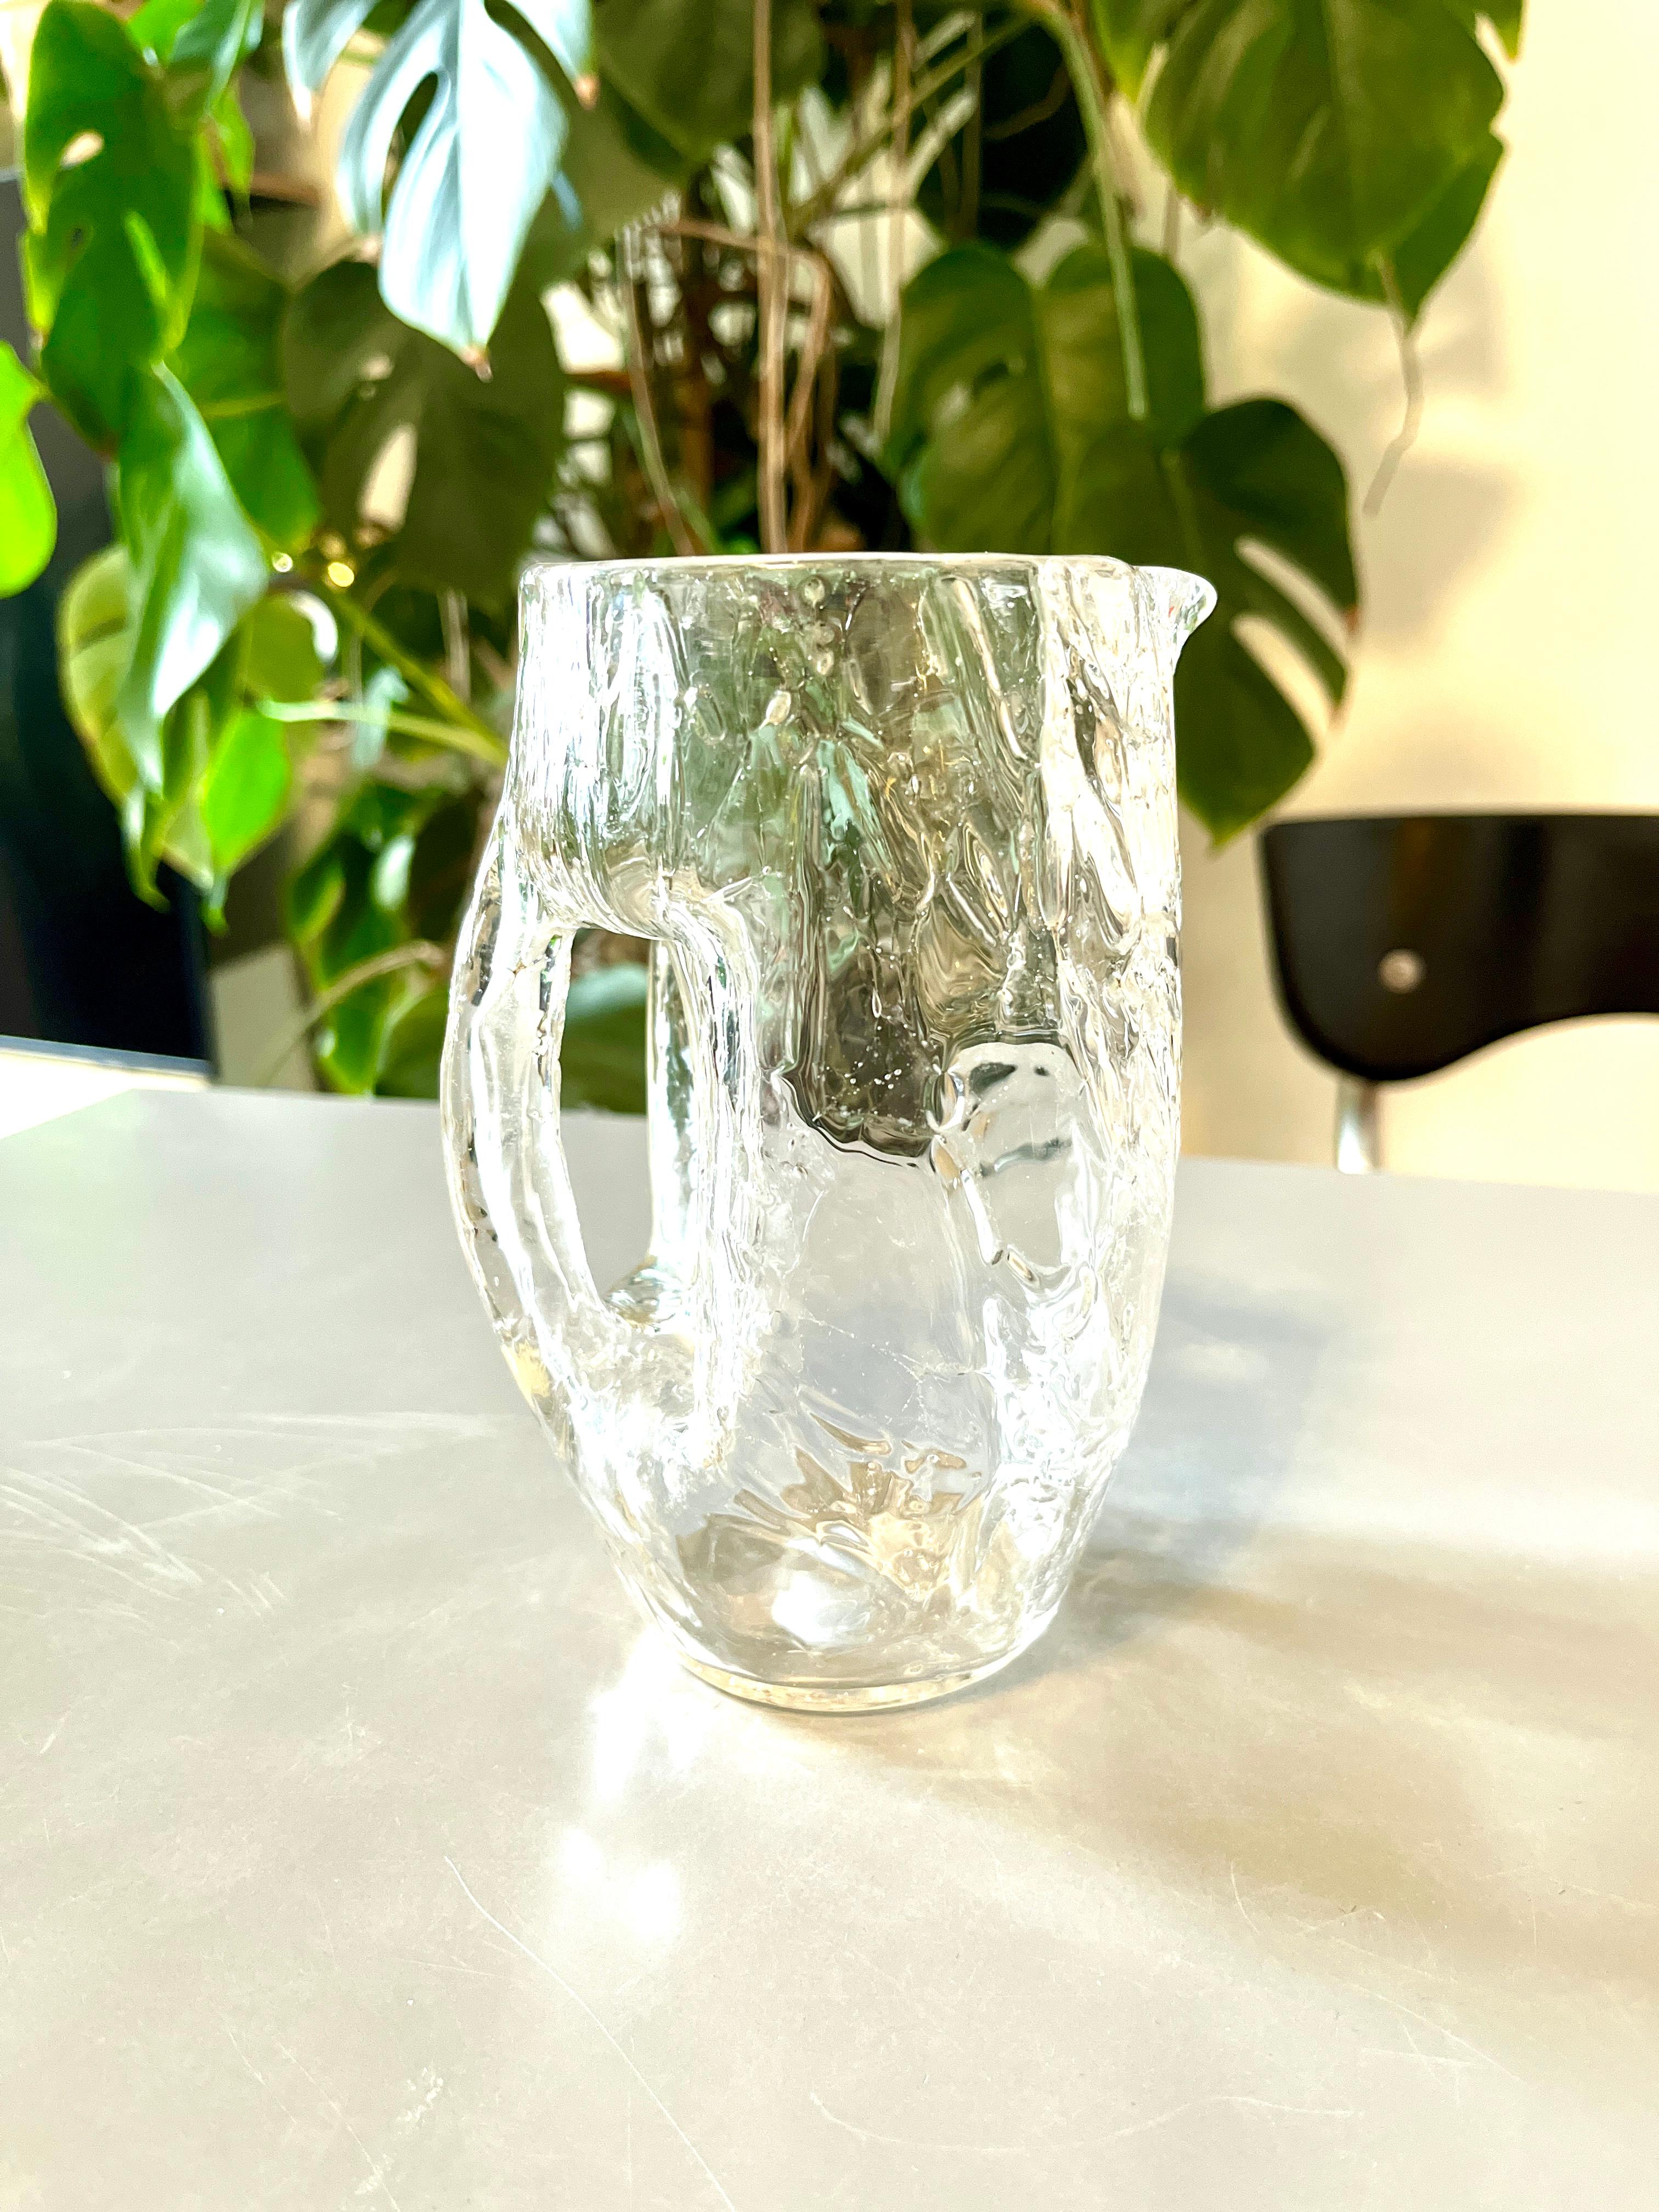 Un magnifique pichet en verre soufflé à la bouche de style Art Nouveau / Jugendstil, daté d'environ 1900, conçu par le sécessionniste viennois Kolo Moser. Cette jolie cruche est fabriquée à la main en verre de cristal clair et présente un étonnant